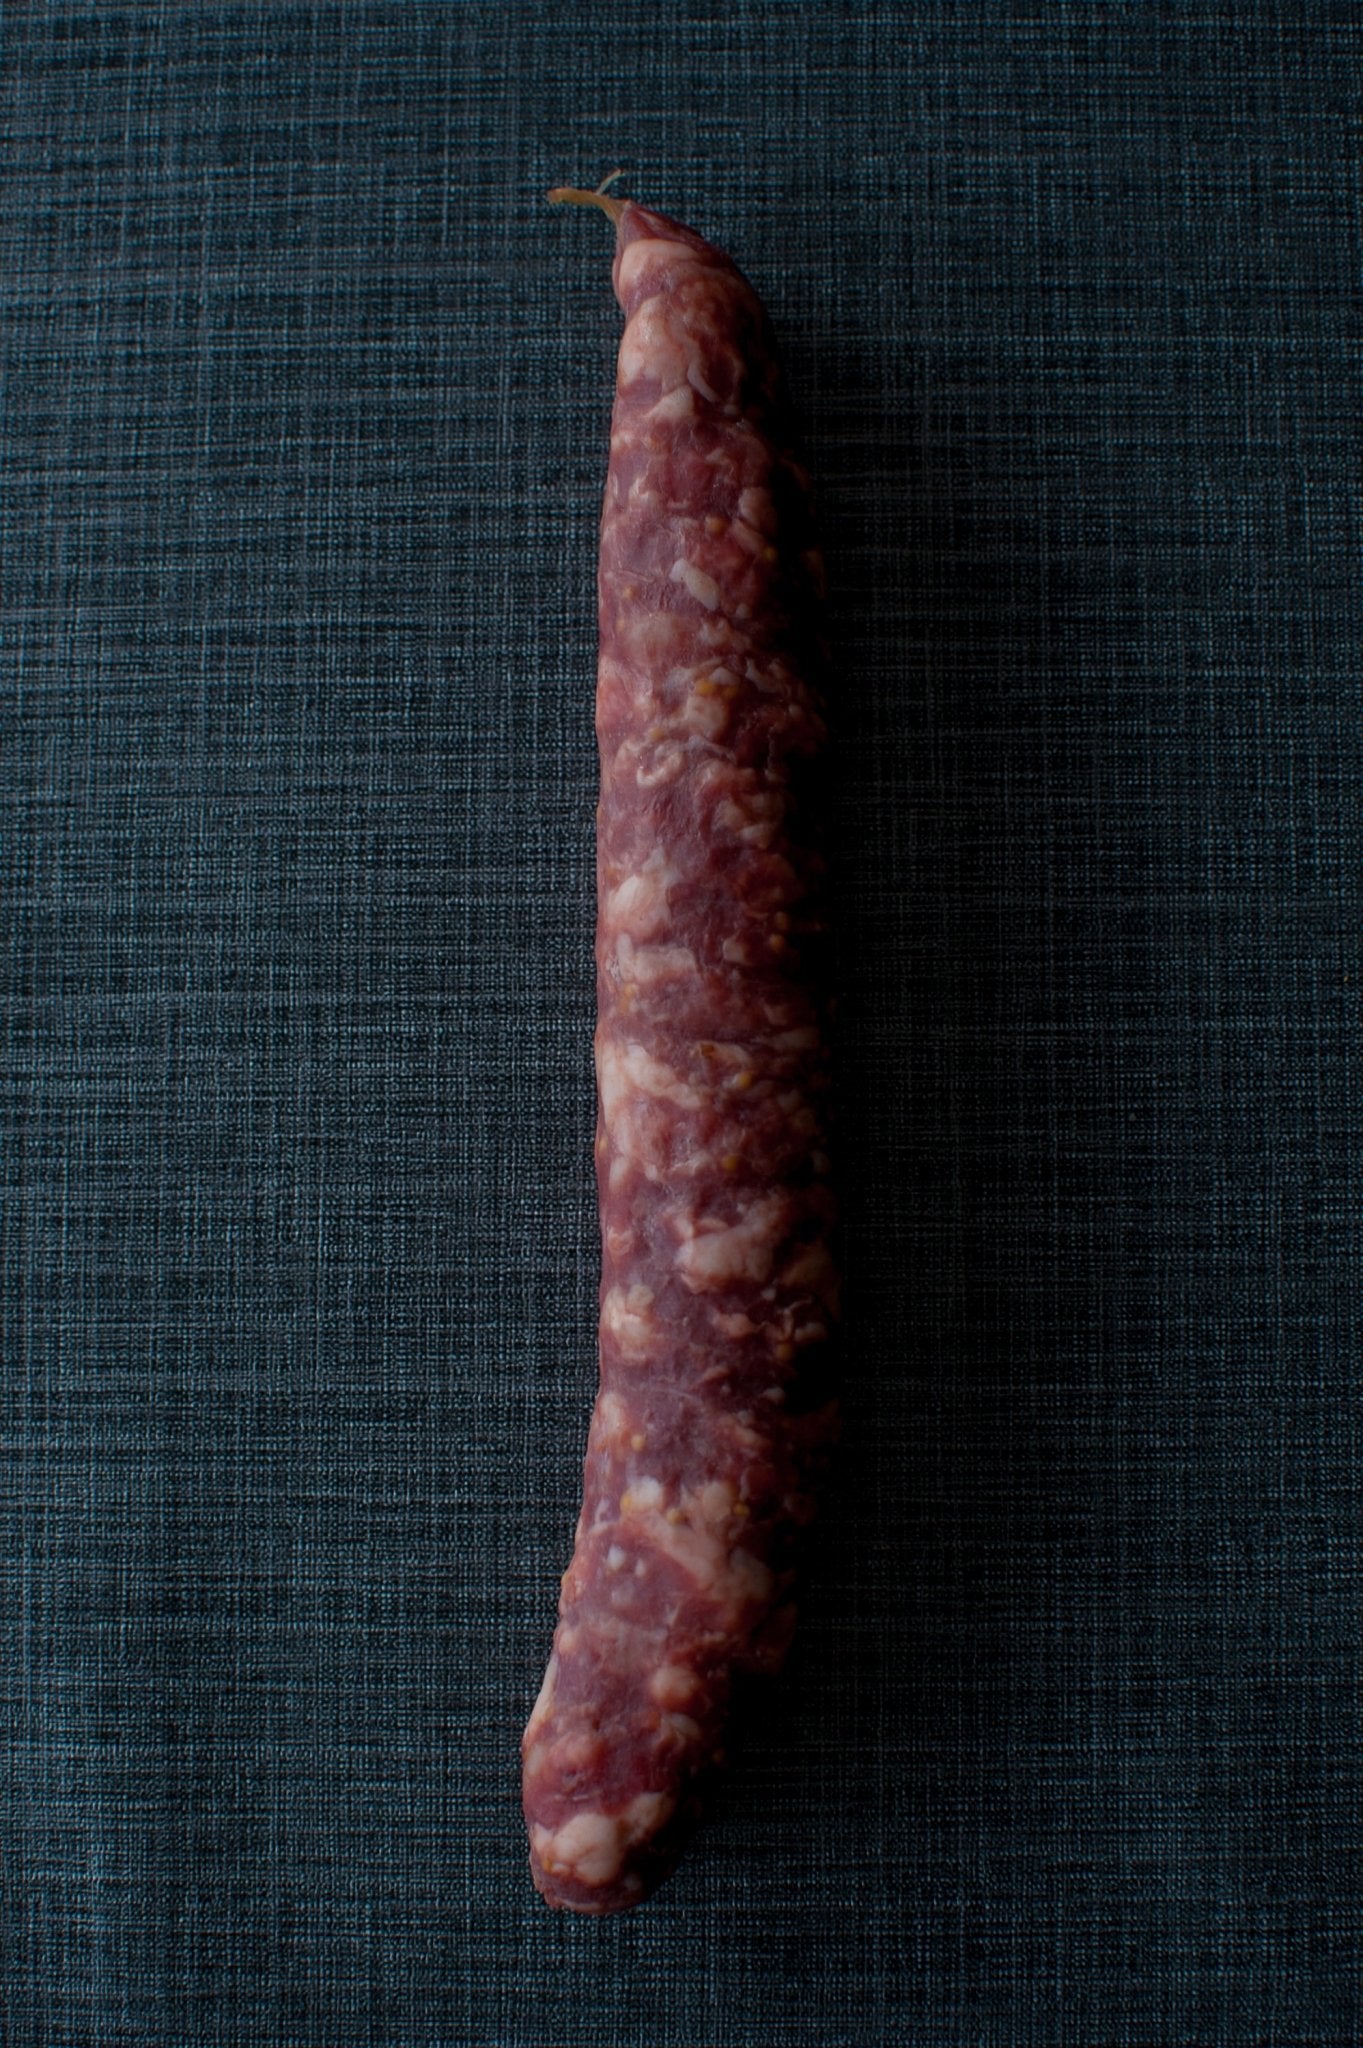 Mosterd knoflookworst - Eerlijk Vlees Groep B.V.